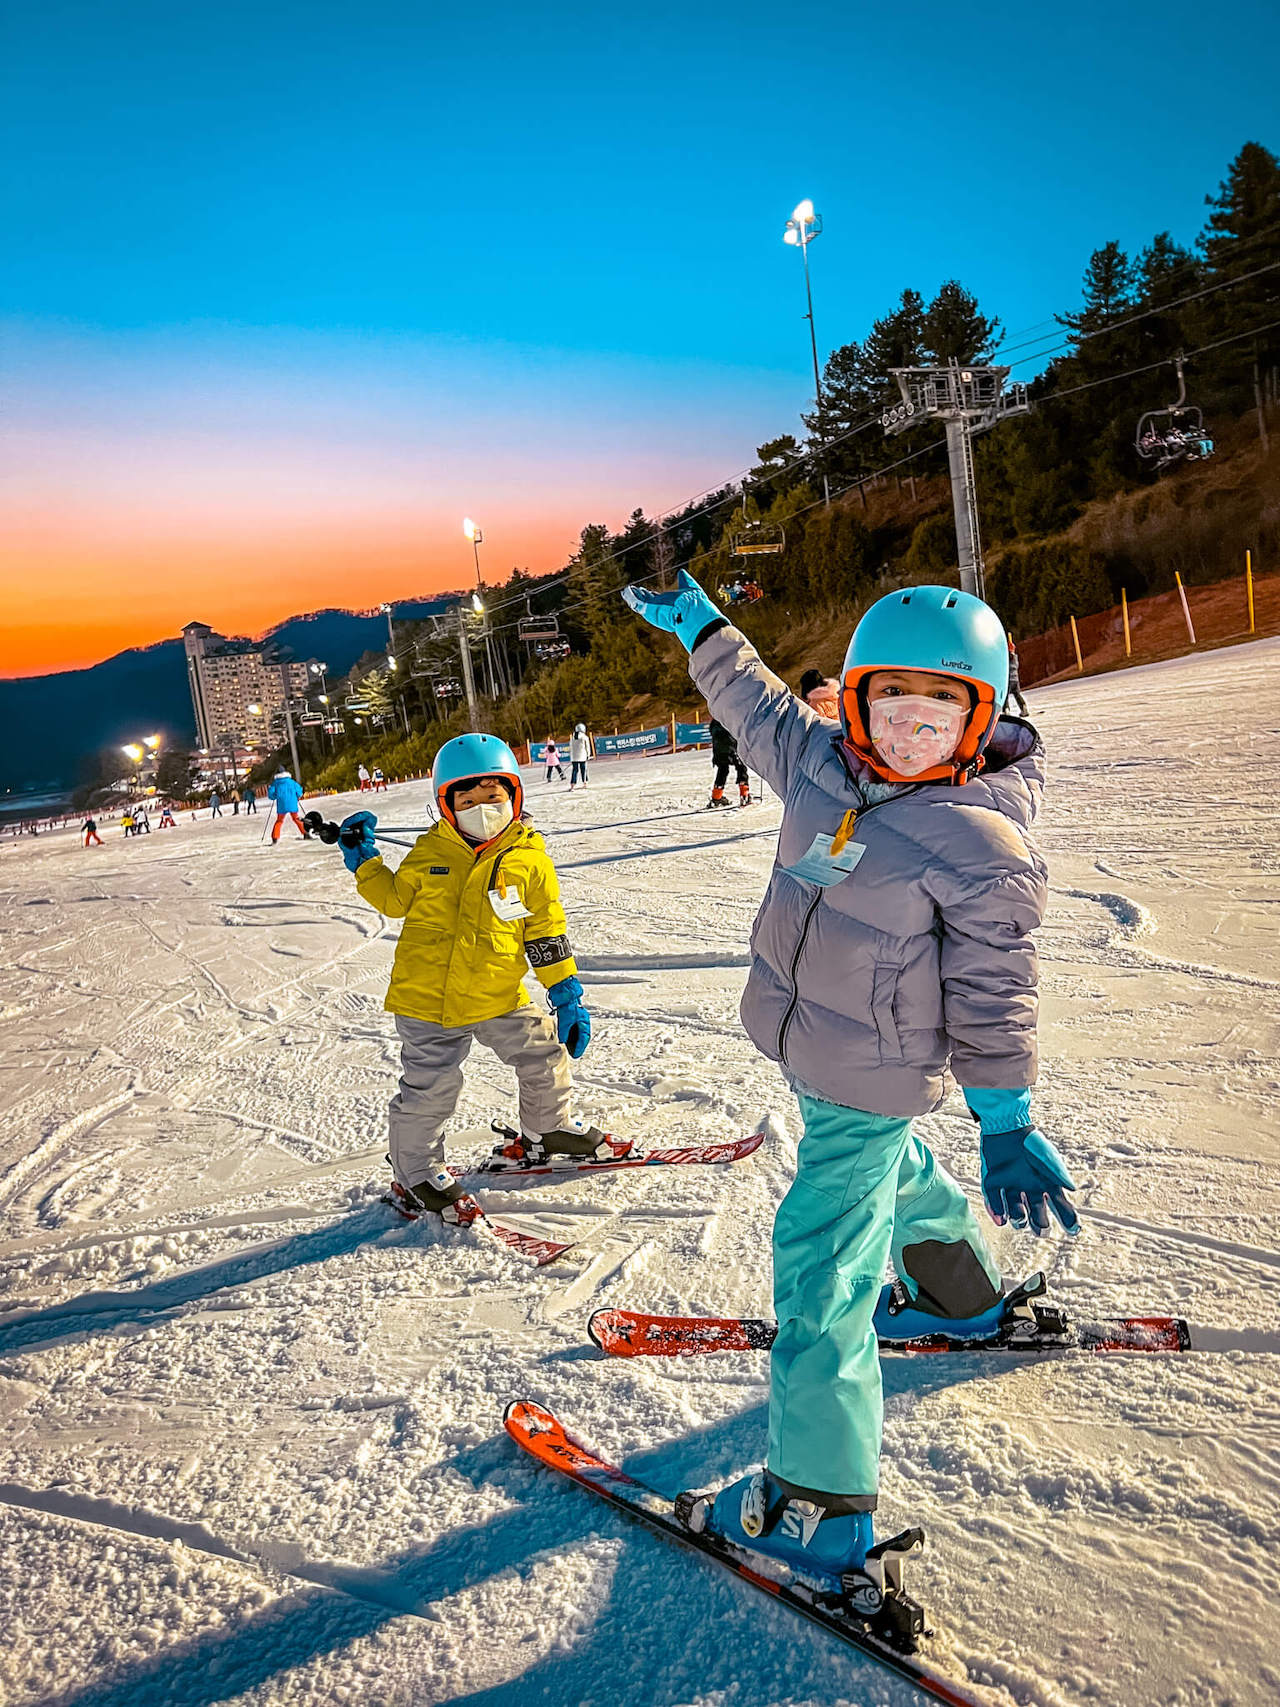 seollal in seoul | night skiing at Oak Valley Ski Resort